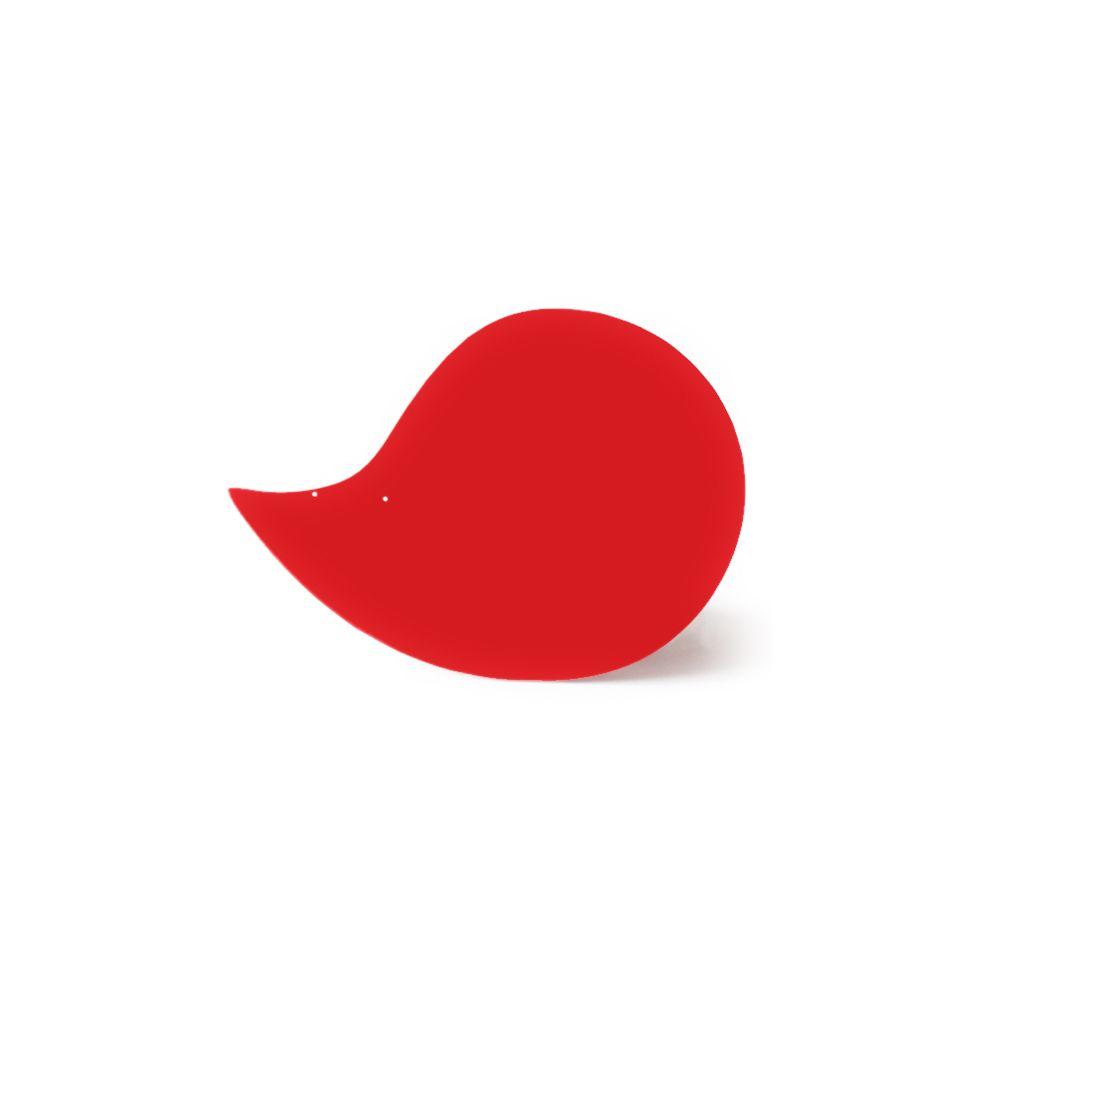 White Circle Red Comma Logo - Red comma - Virvoltan, mobiles à la française.